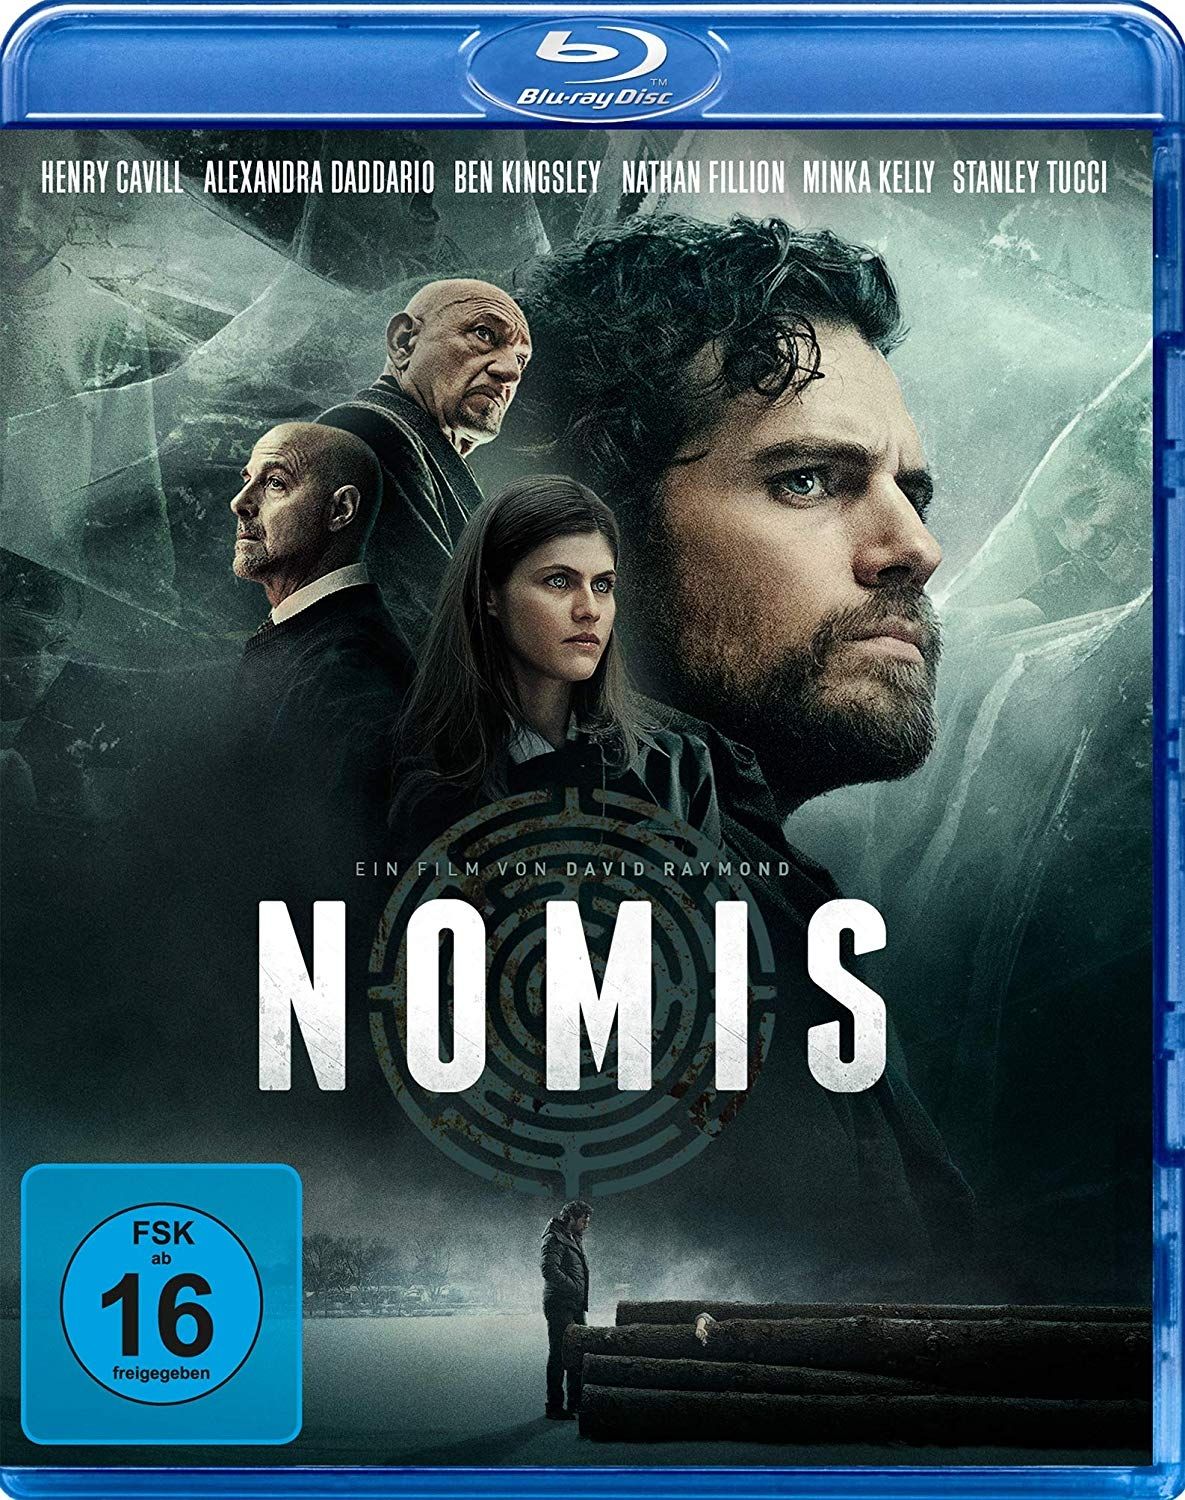 Nomis - Die Nacht des Jägers (BLURAY)